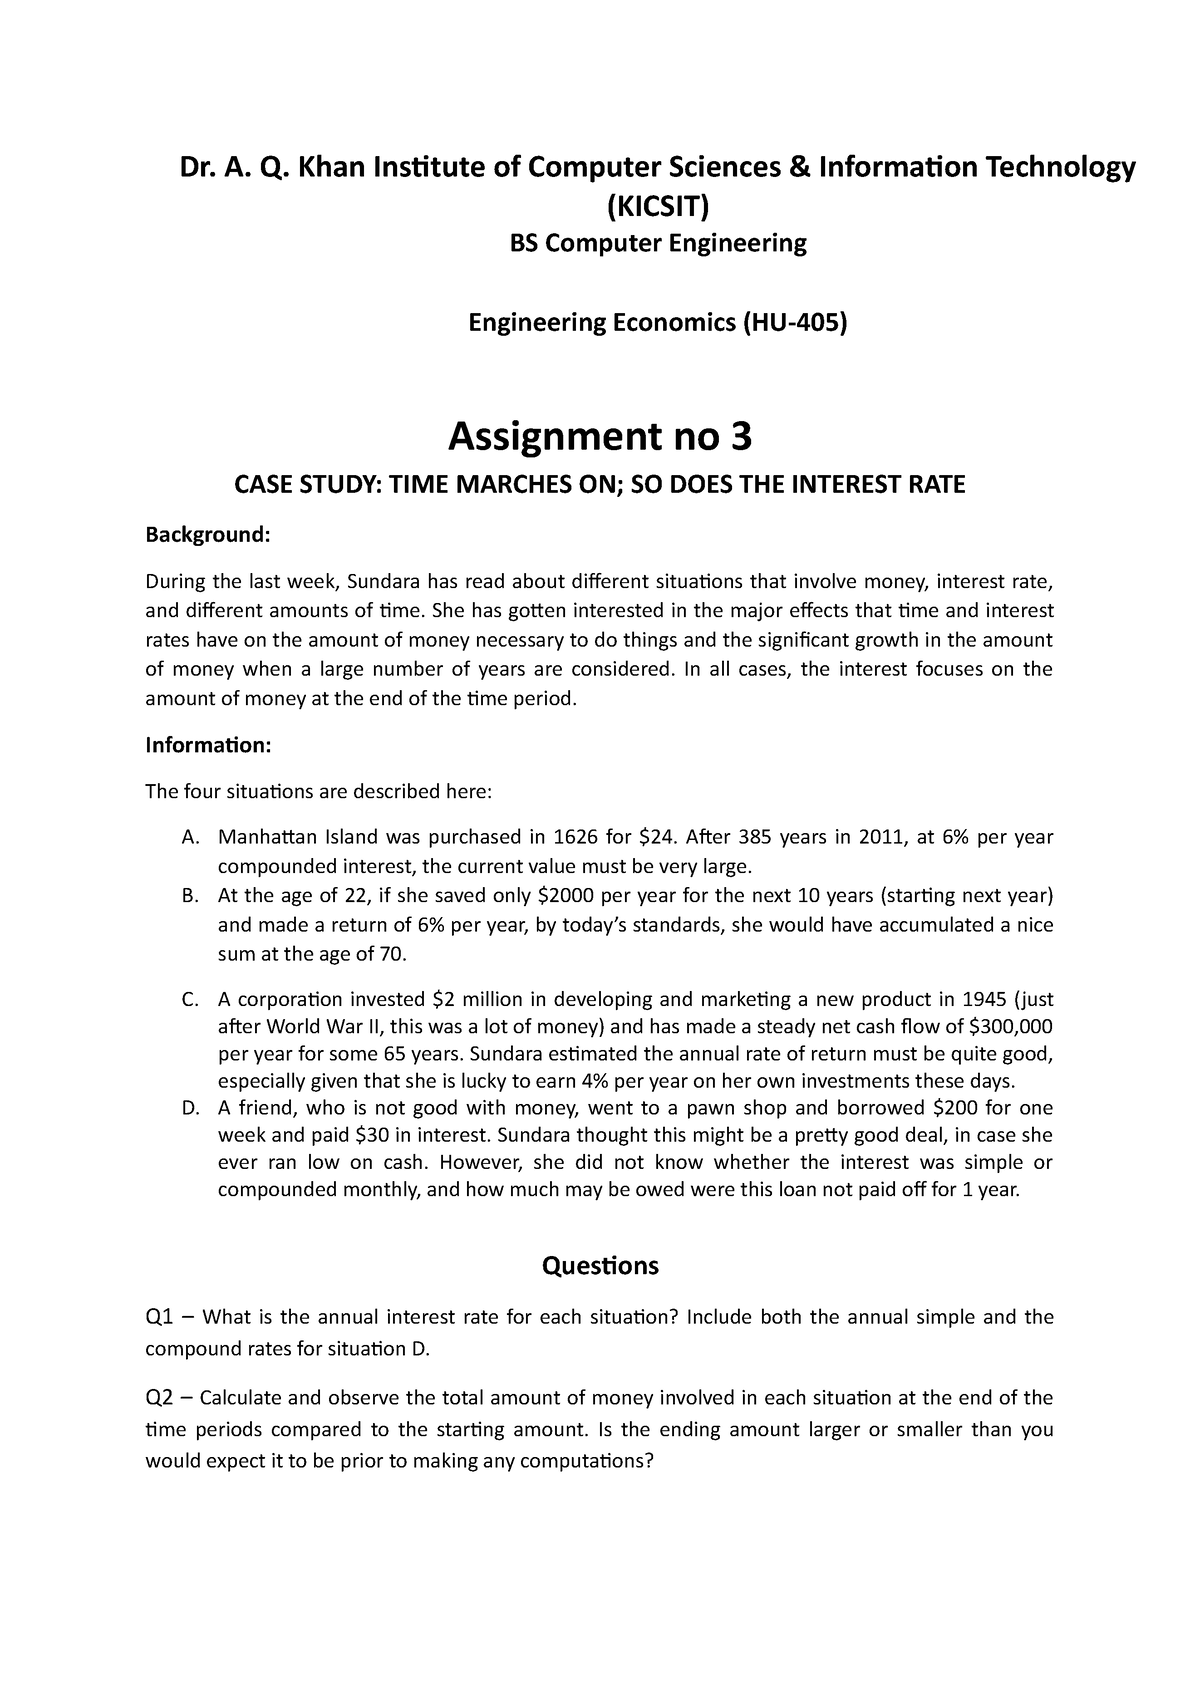 engineering economics case study pdf